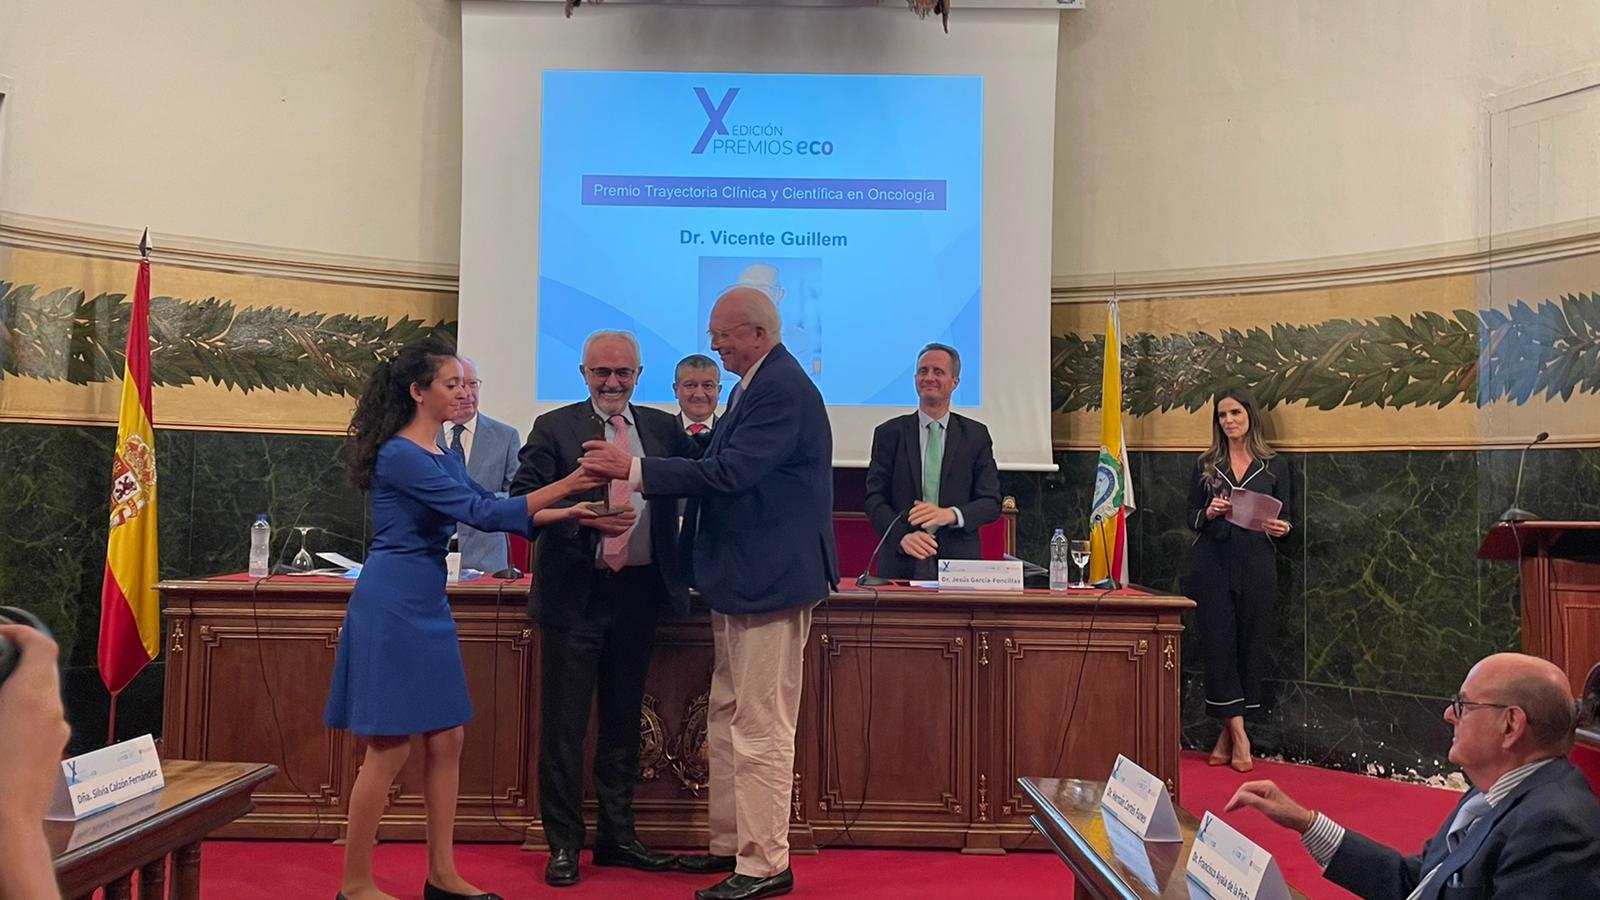 El doctor Vicente Guillem recibe el “Premio a la trayectoria clínica y científica en Oncología” otorgado por la Fundación ECO